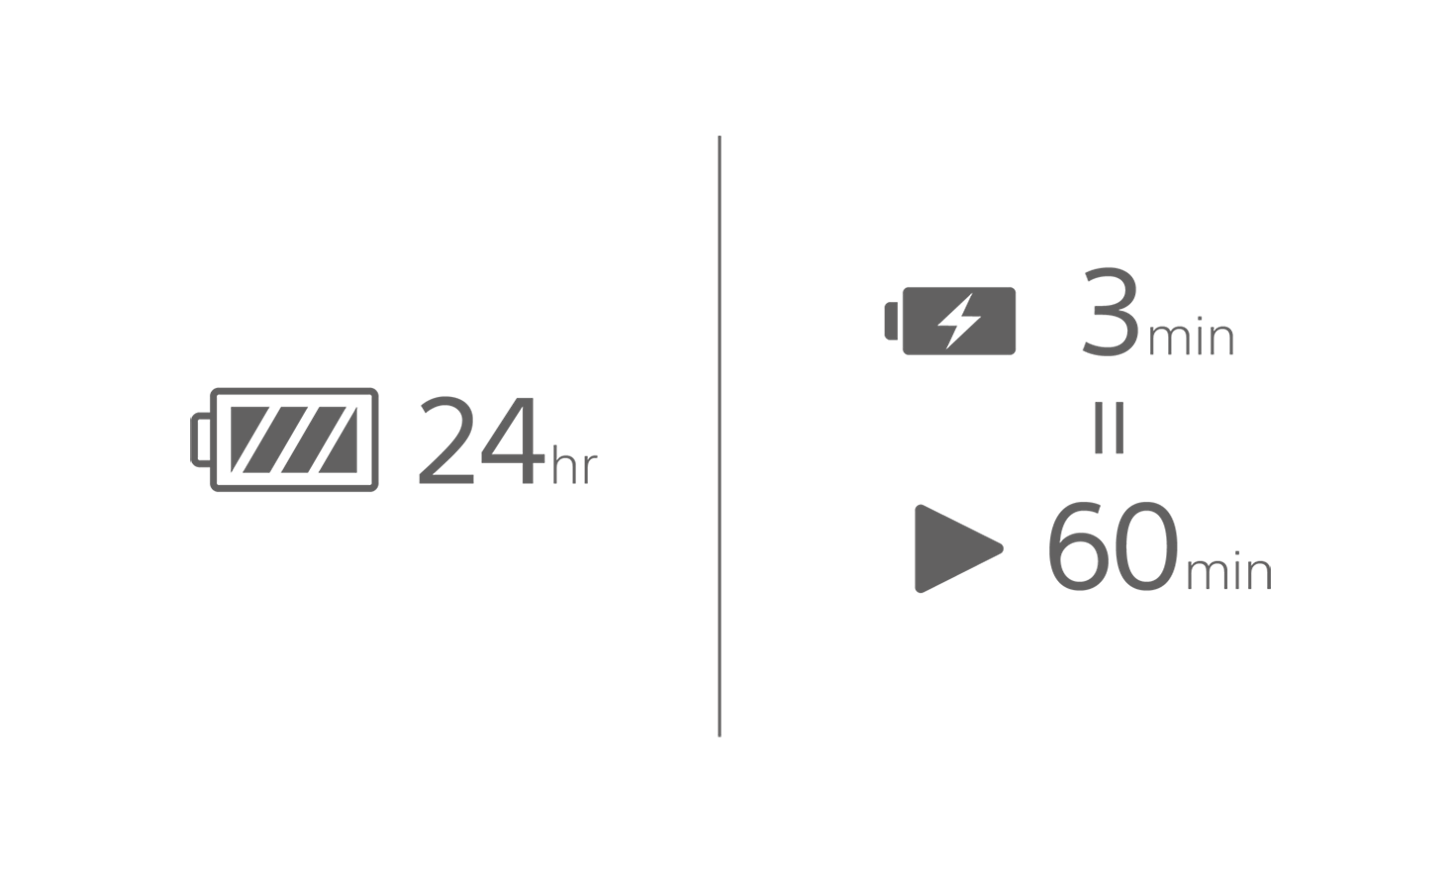 Imagem de um ícone de bateria com o texto 24 horas, outra bateria com um símbolo de carregamento e 3 min acima de um ícone de reprodução com 60 min